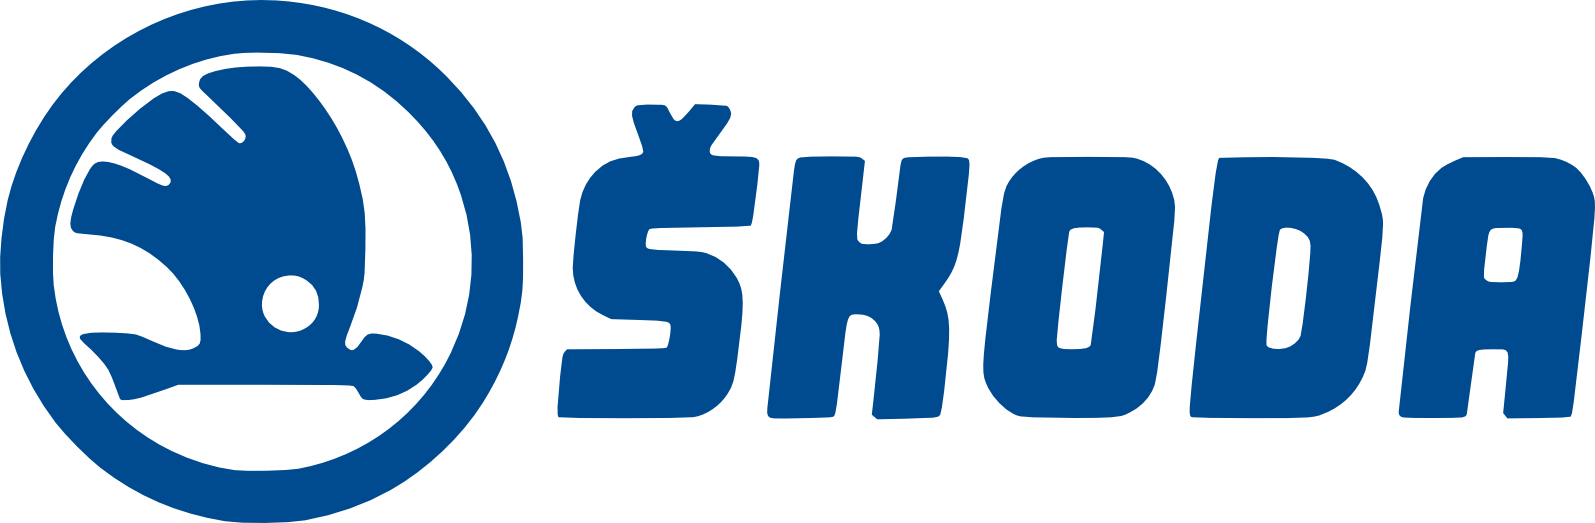 Skoda Logo Transparent Image